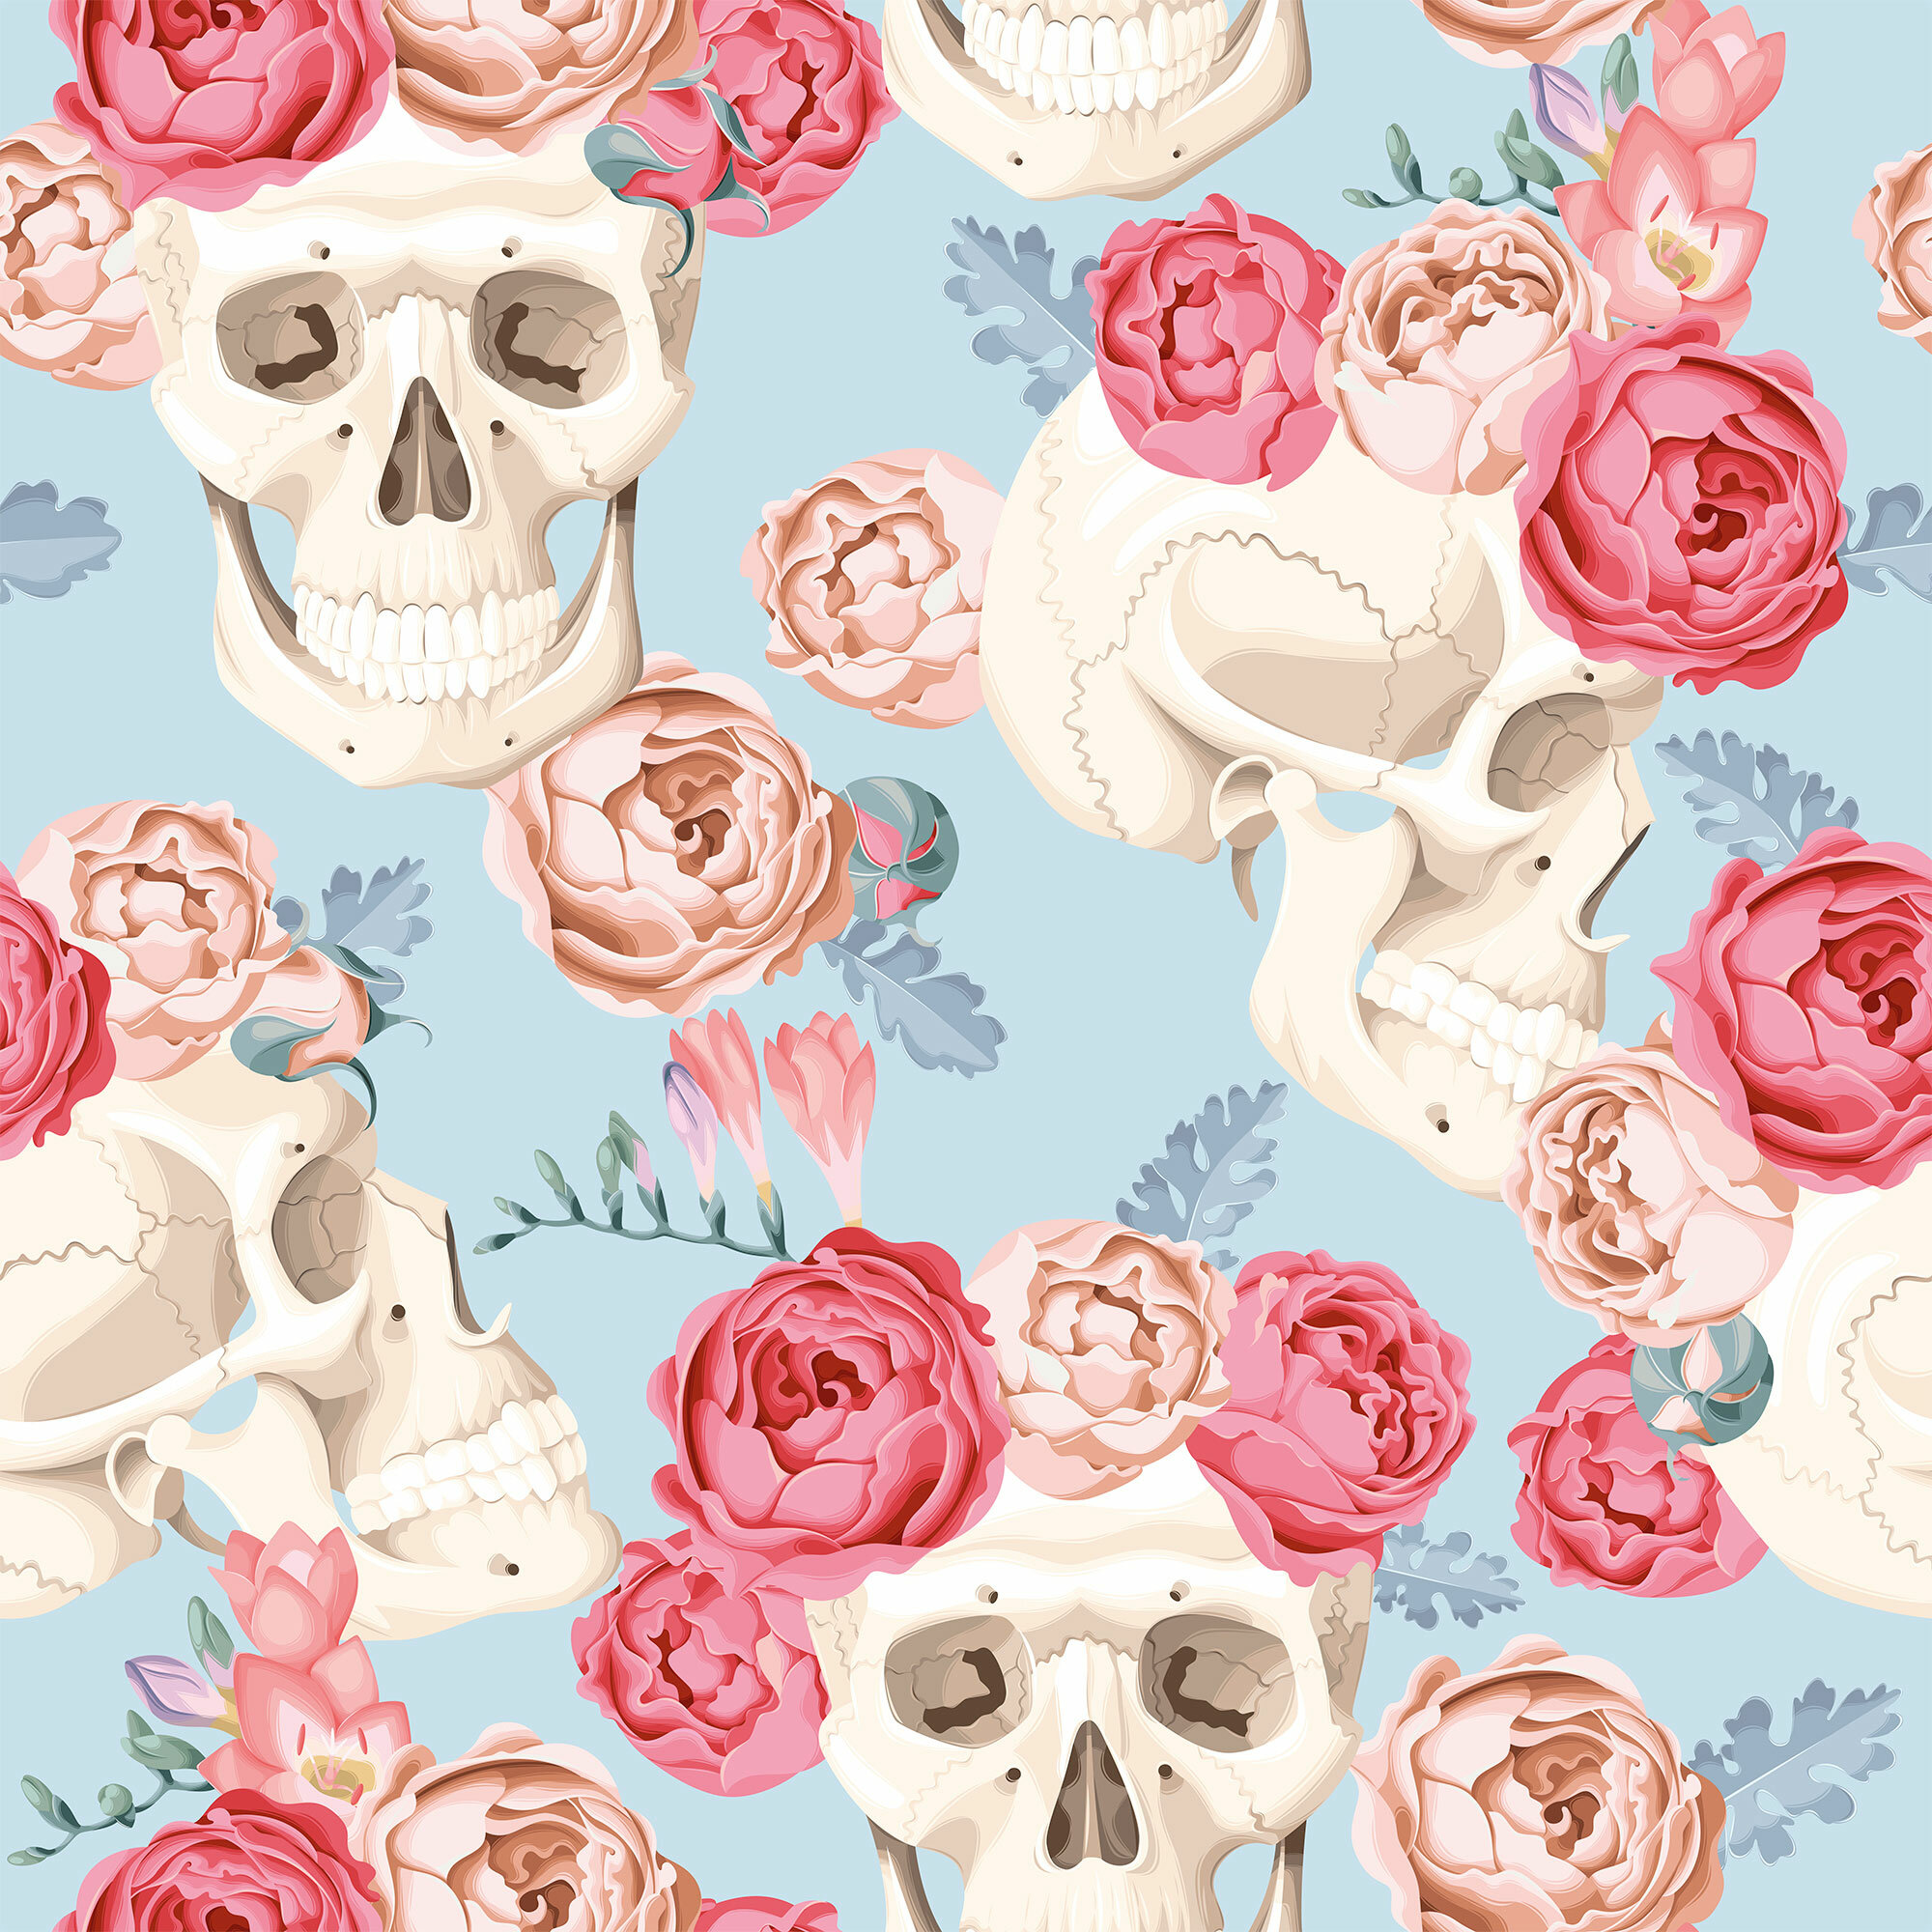 Skull Flower Fabric Wallpaper and Home Decor  Spoonflower